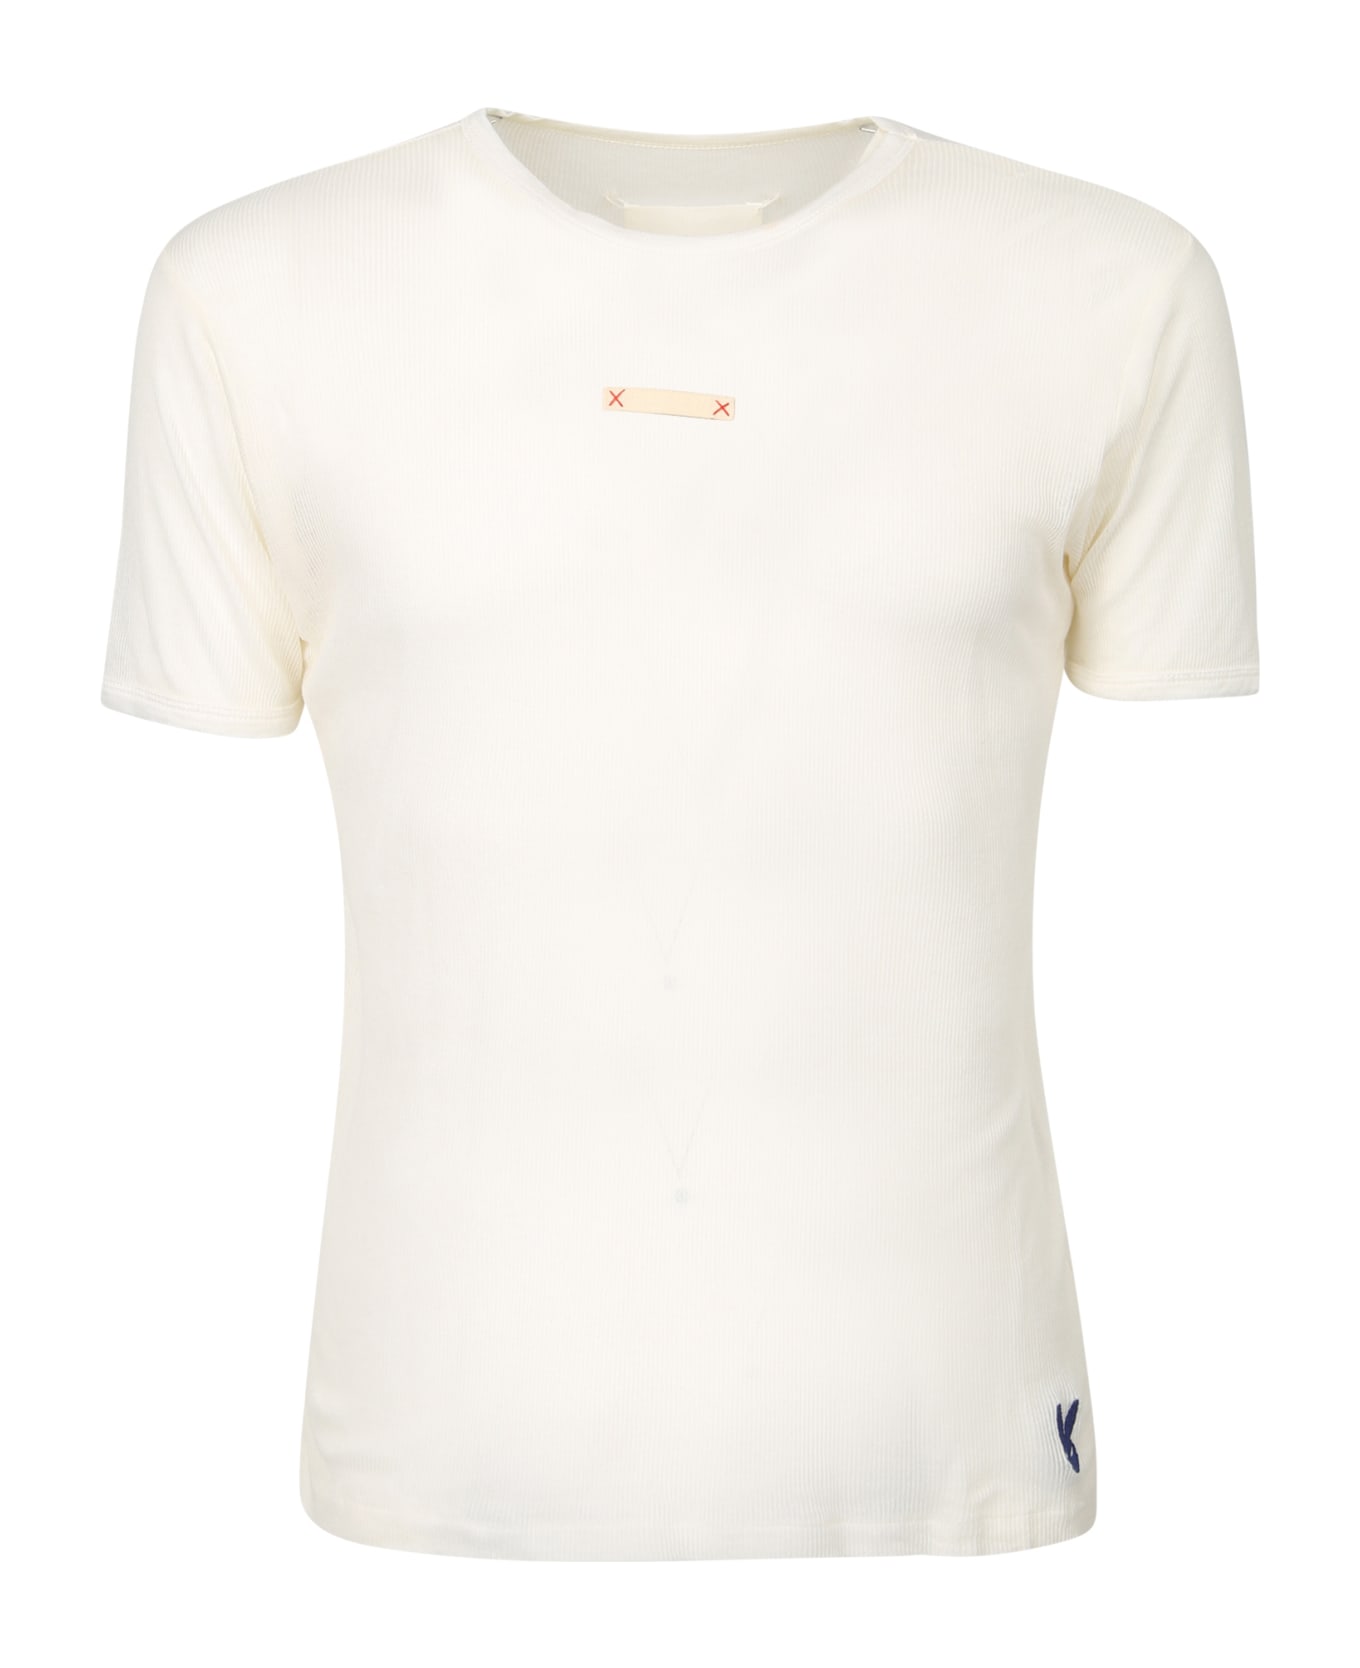 Maison Margiela Cotton T-shirt - White シャツ